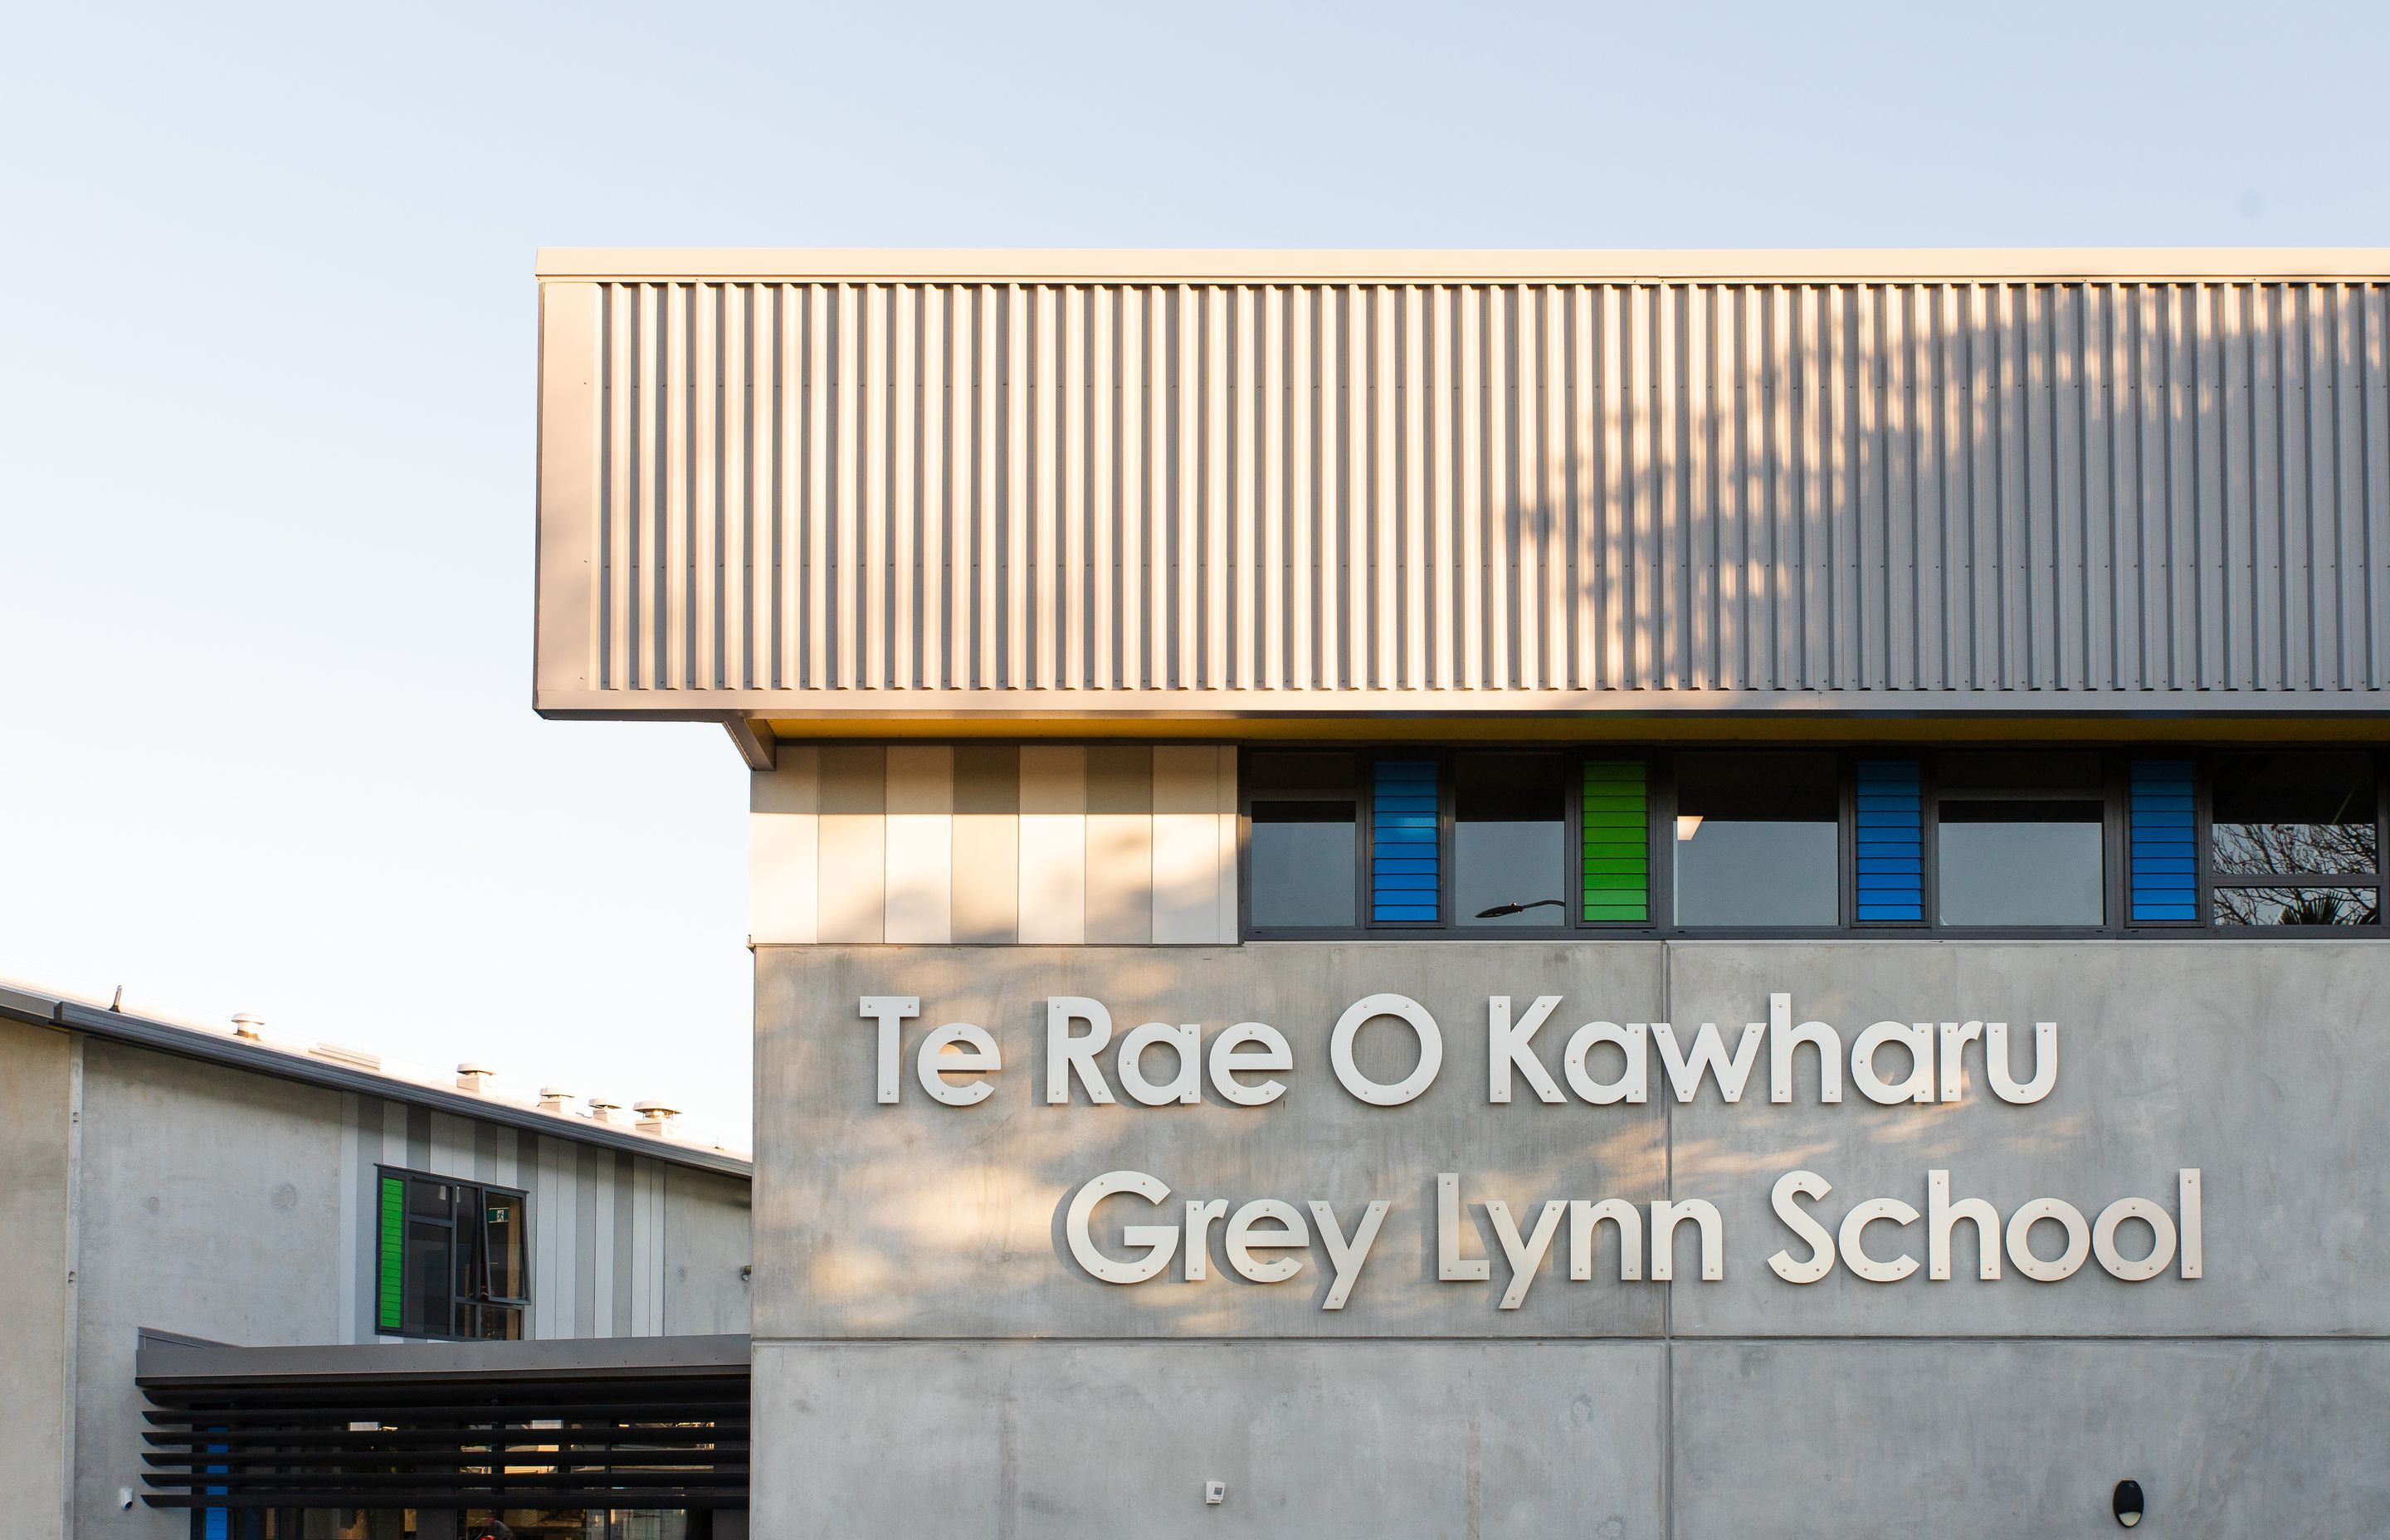 Grey Lynn School - Te Rae O Kawharu